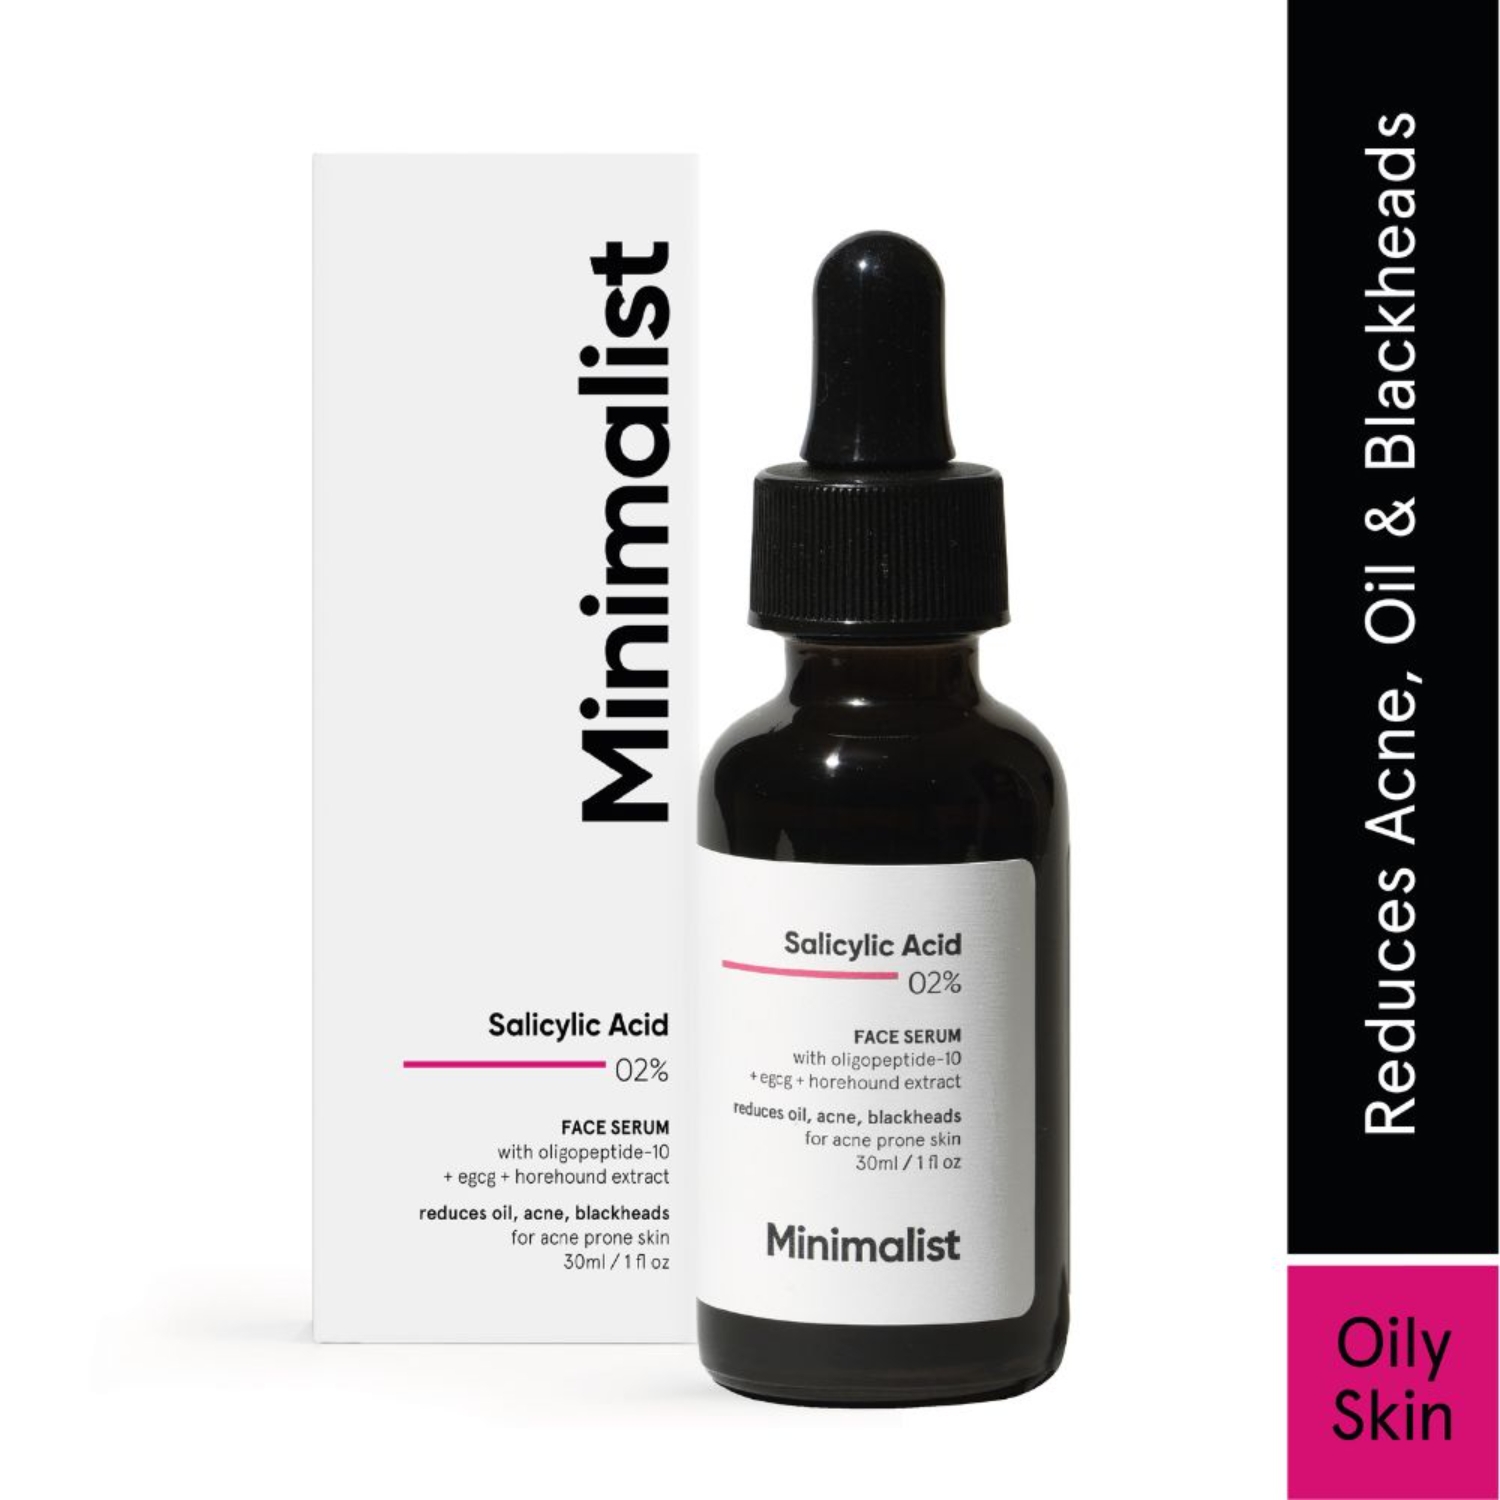 Minimalist | Minimalist 2% Salicylic Acid Face Serum Reduces Oil, Blackheads & Acne (30ml)